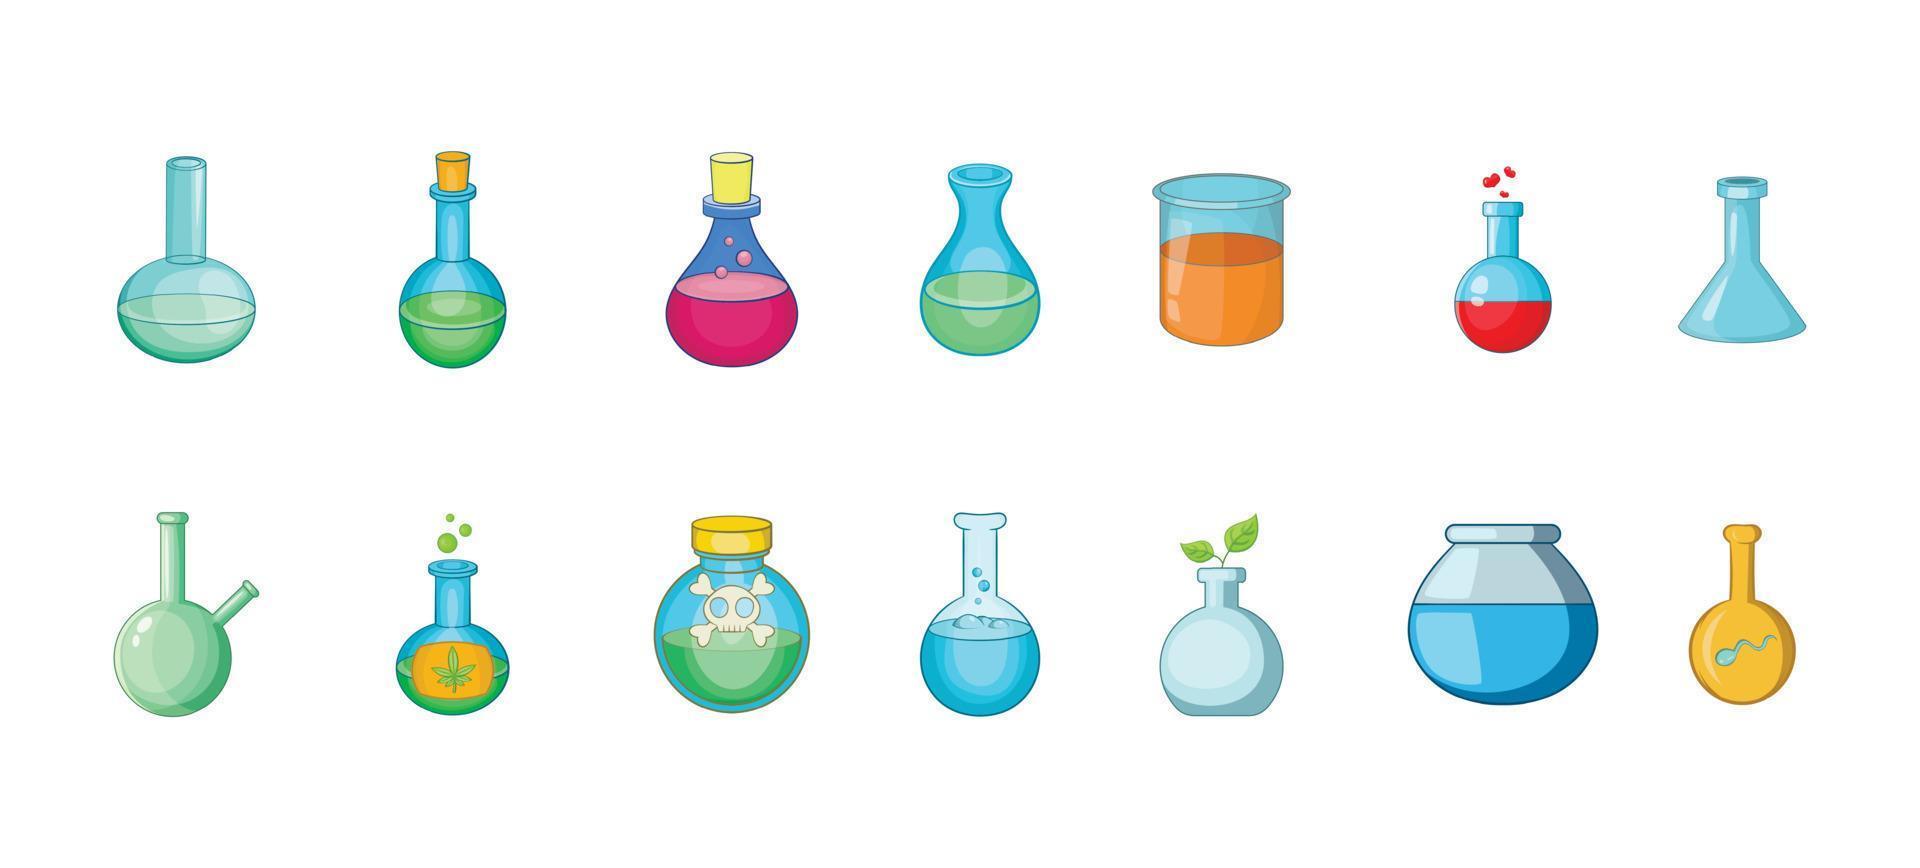 Symbolsatz für chemische Flaschen, Cartoon-Stil vektor